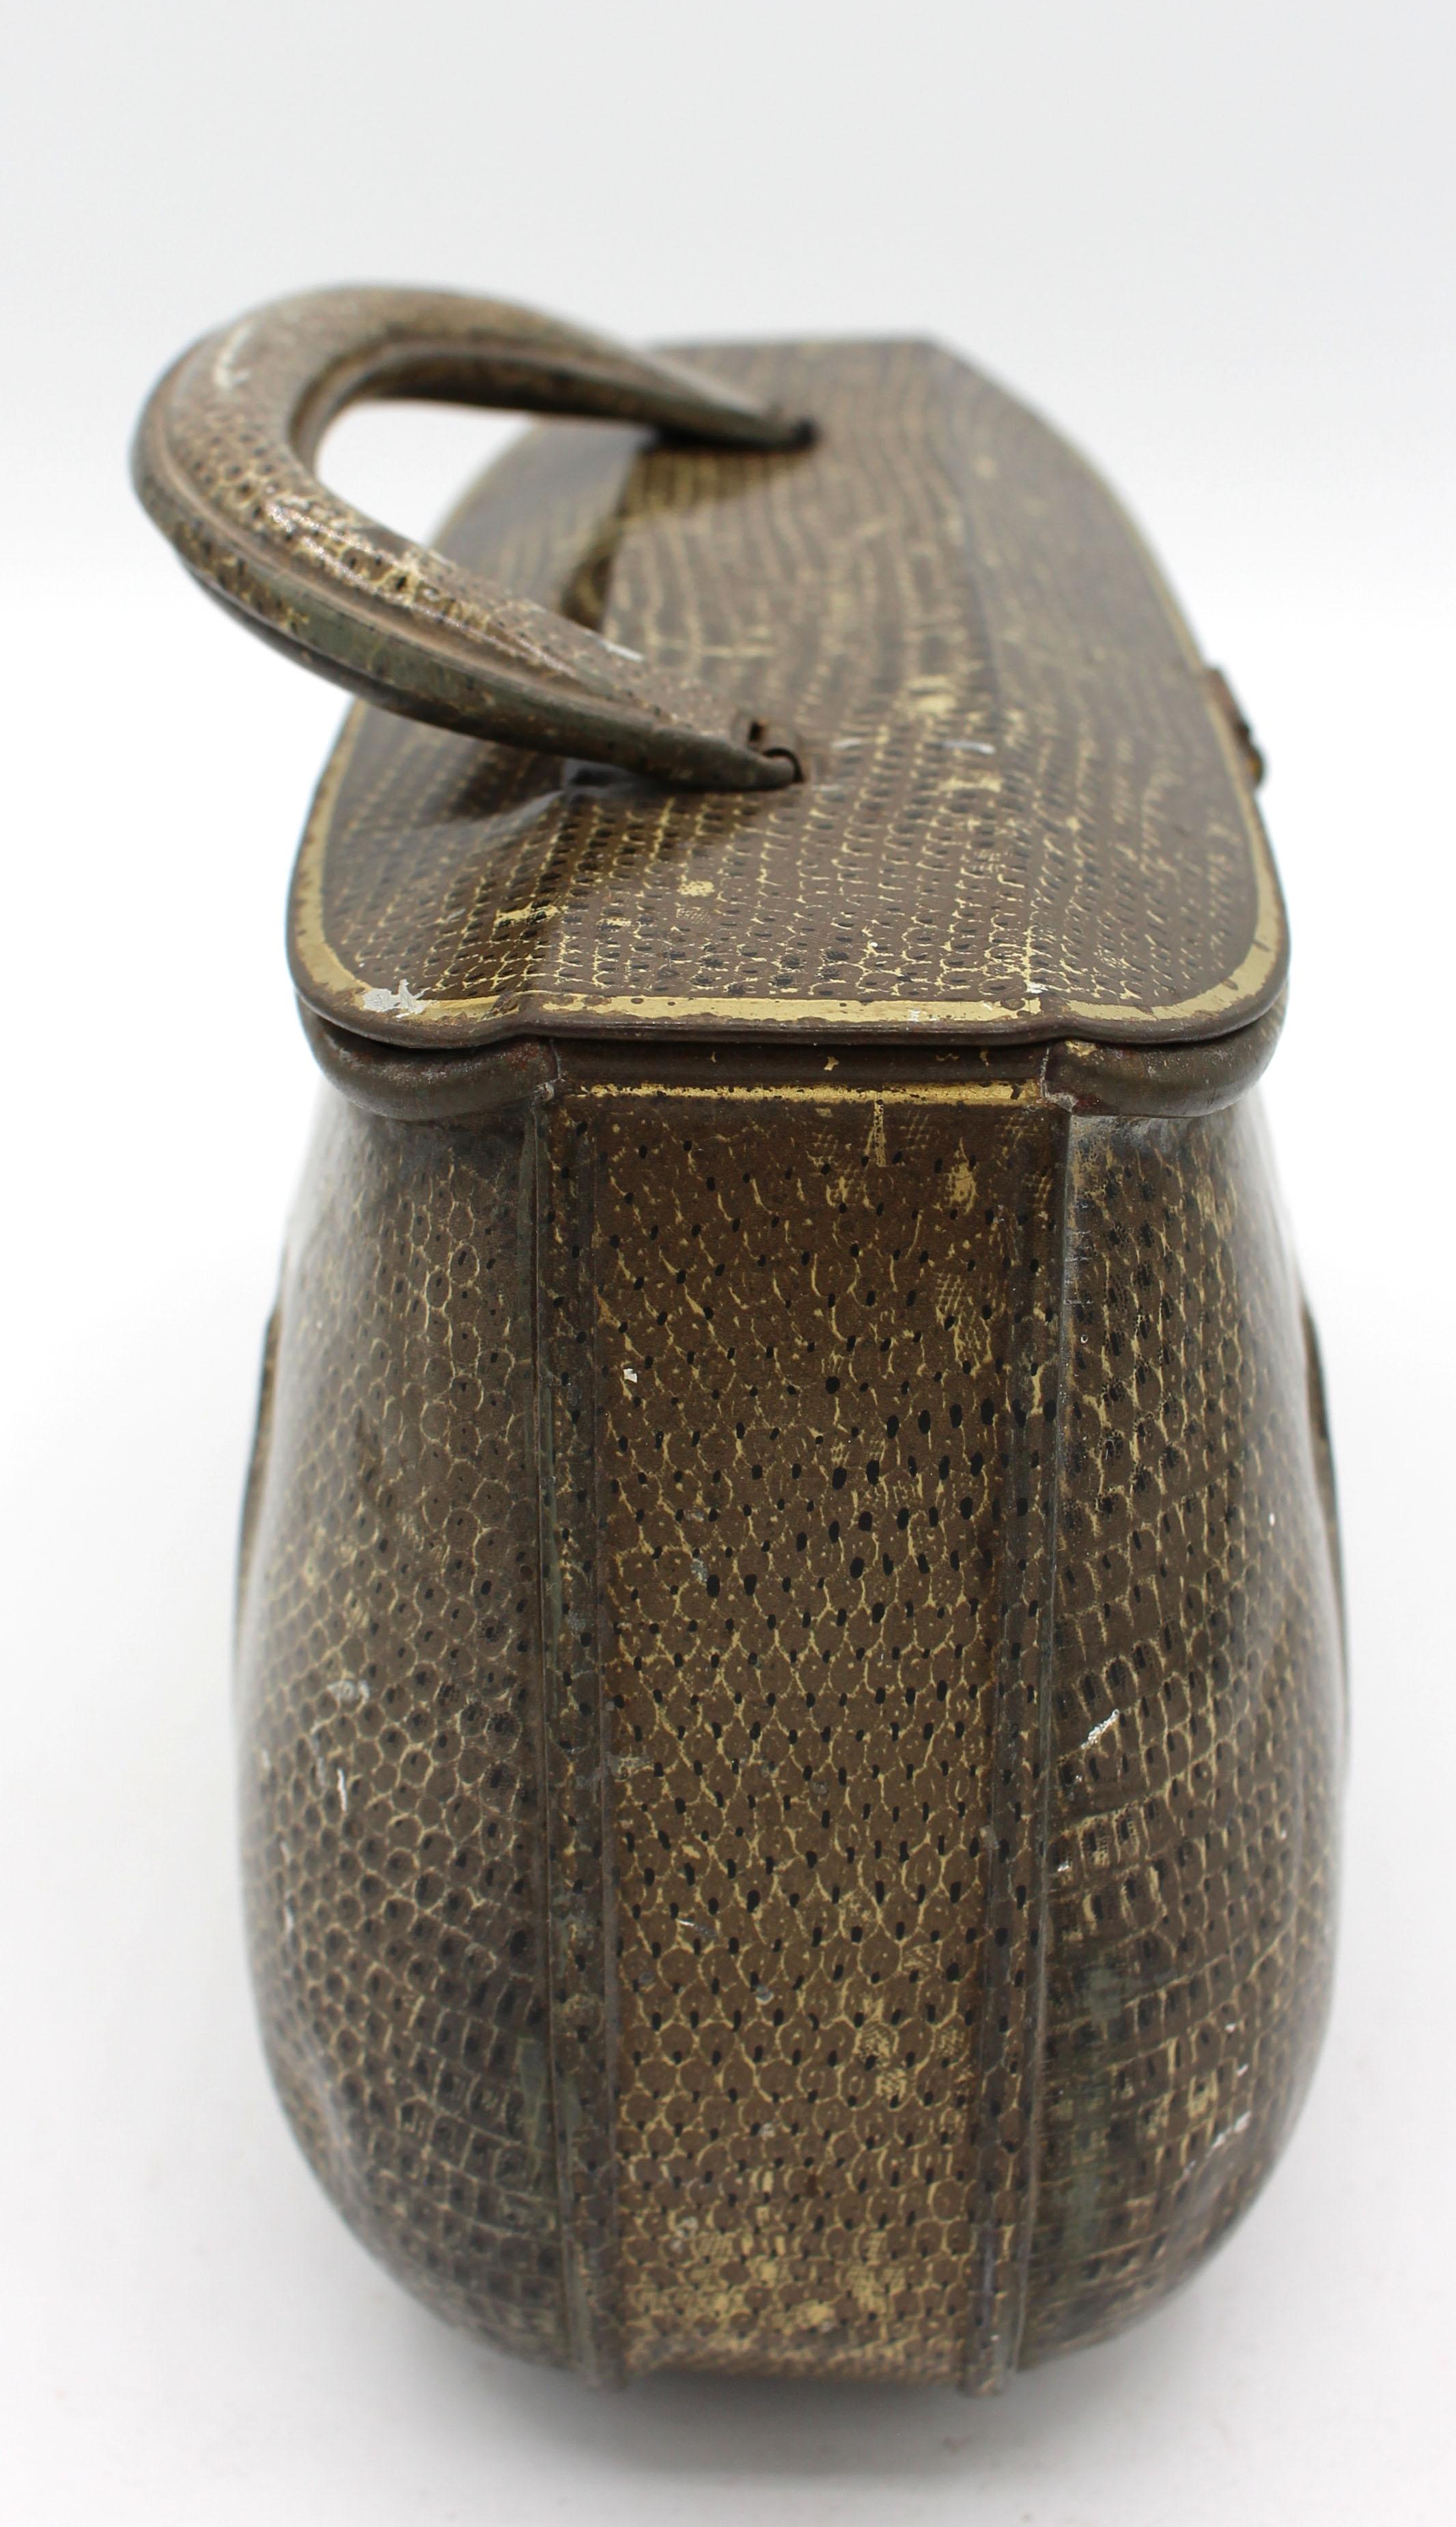 Boîte en fer-blanc en forme de sac à main de Huntley & Palmer, début du 20e siècle, anglais. Décoration en fausse peau de serpent avec détails élégants. Numéro d'enregistrement 48391L, 1908. Toutes les pièces sont en bon état. L'usure des surfaces